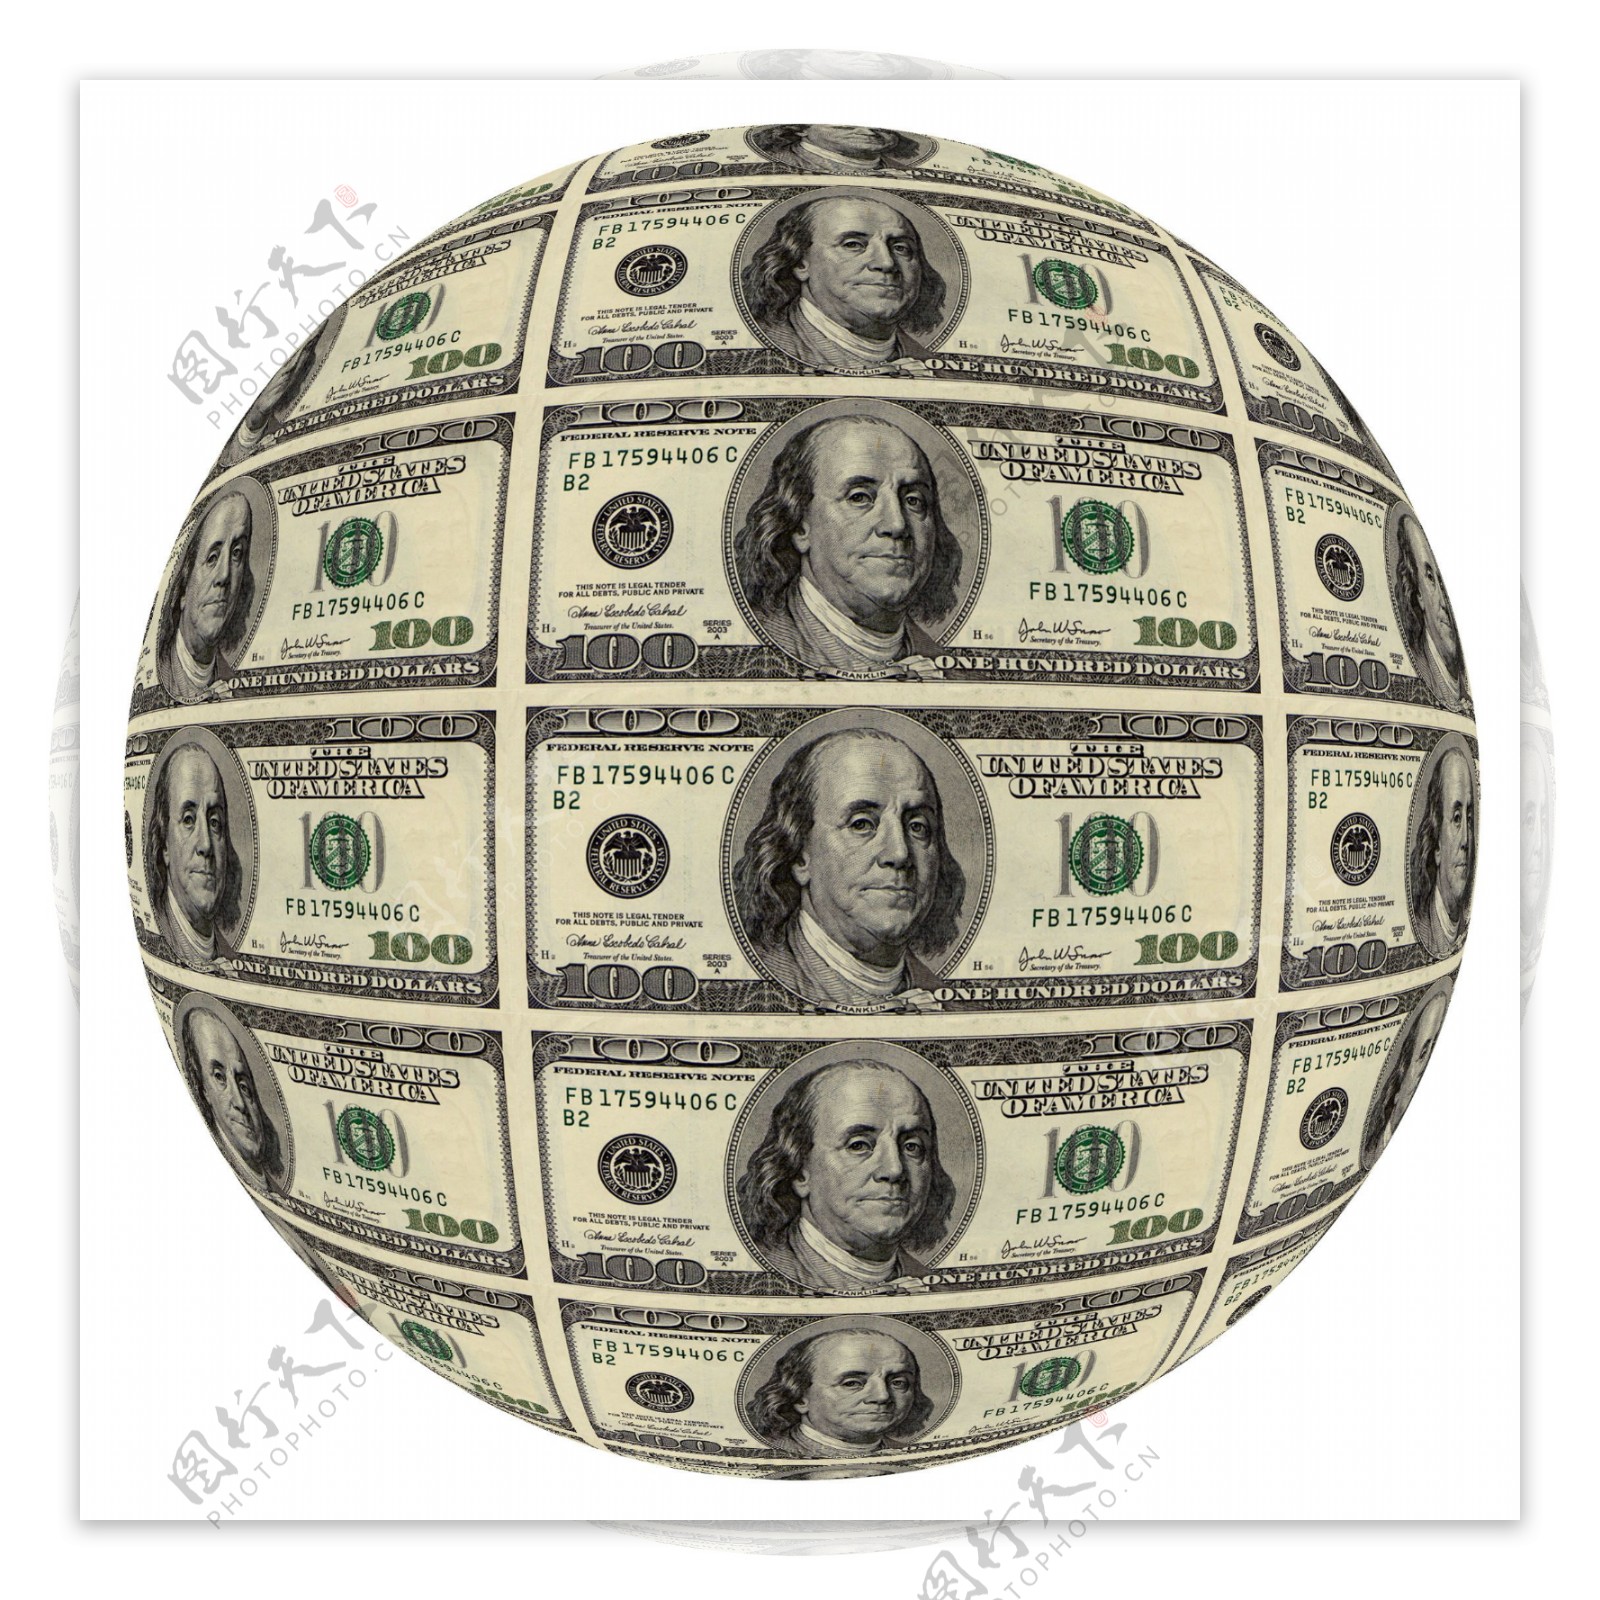 球型的美元钞票创意设计图片